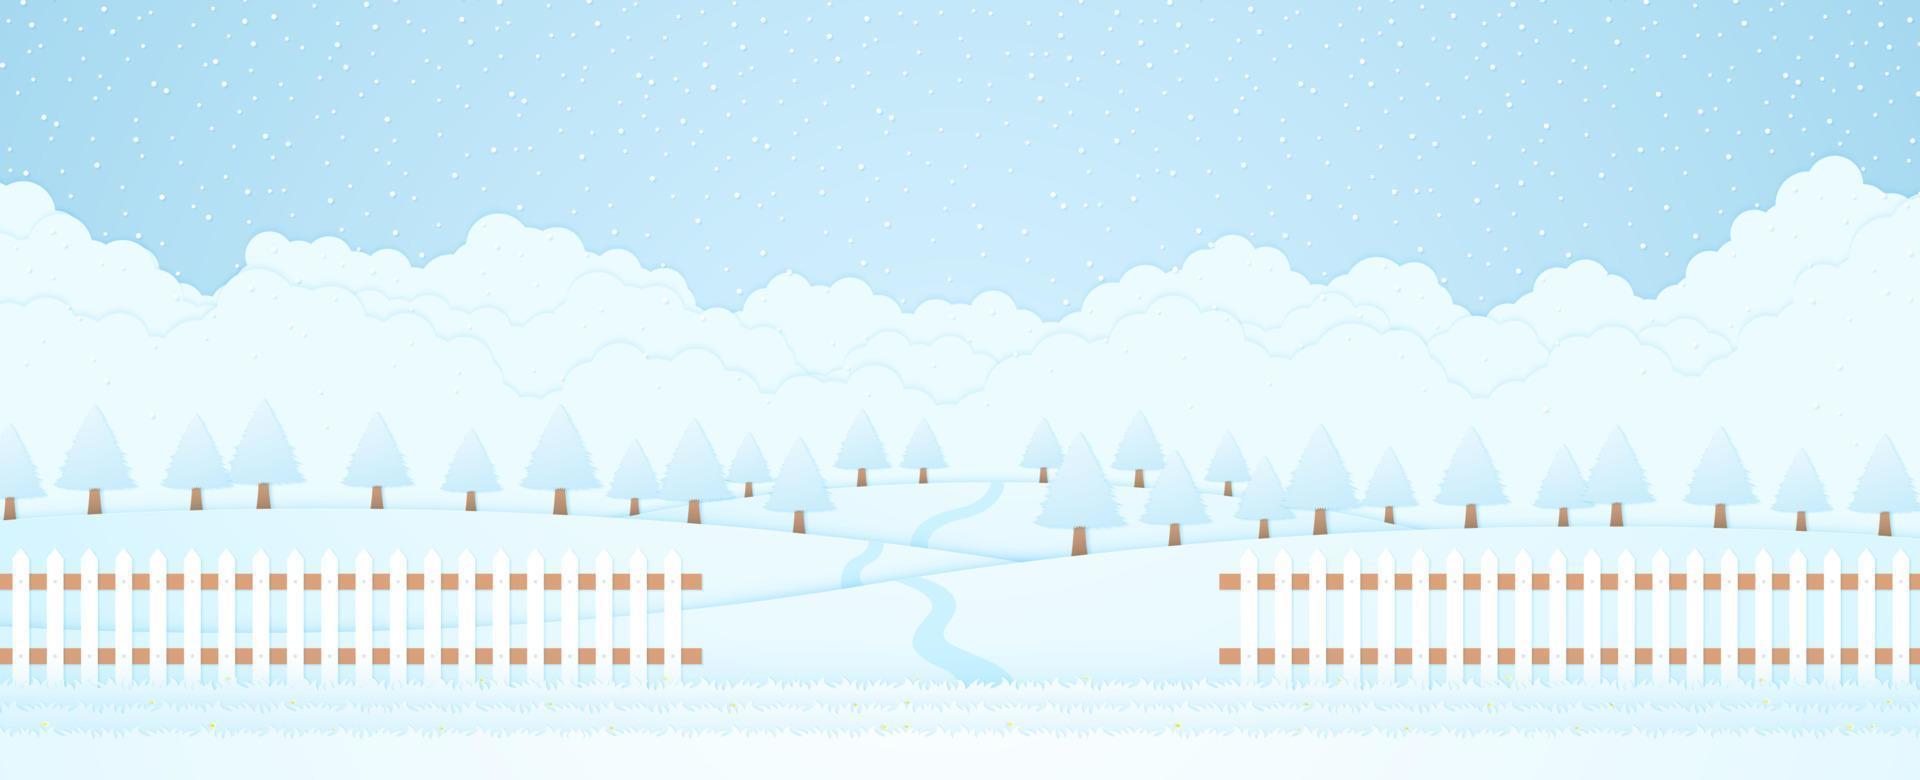 paesaggio invernale, alberi sulla collina e neve che cade, erba e recinzione, stile cartaceo vettore